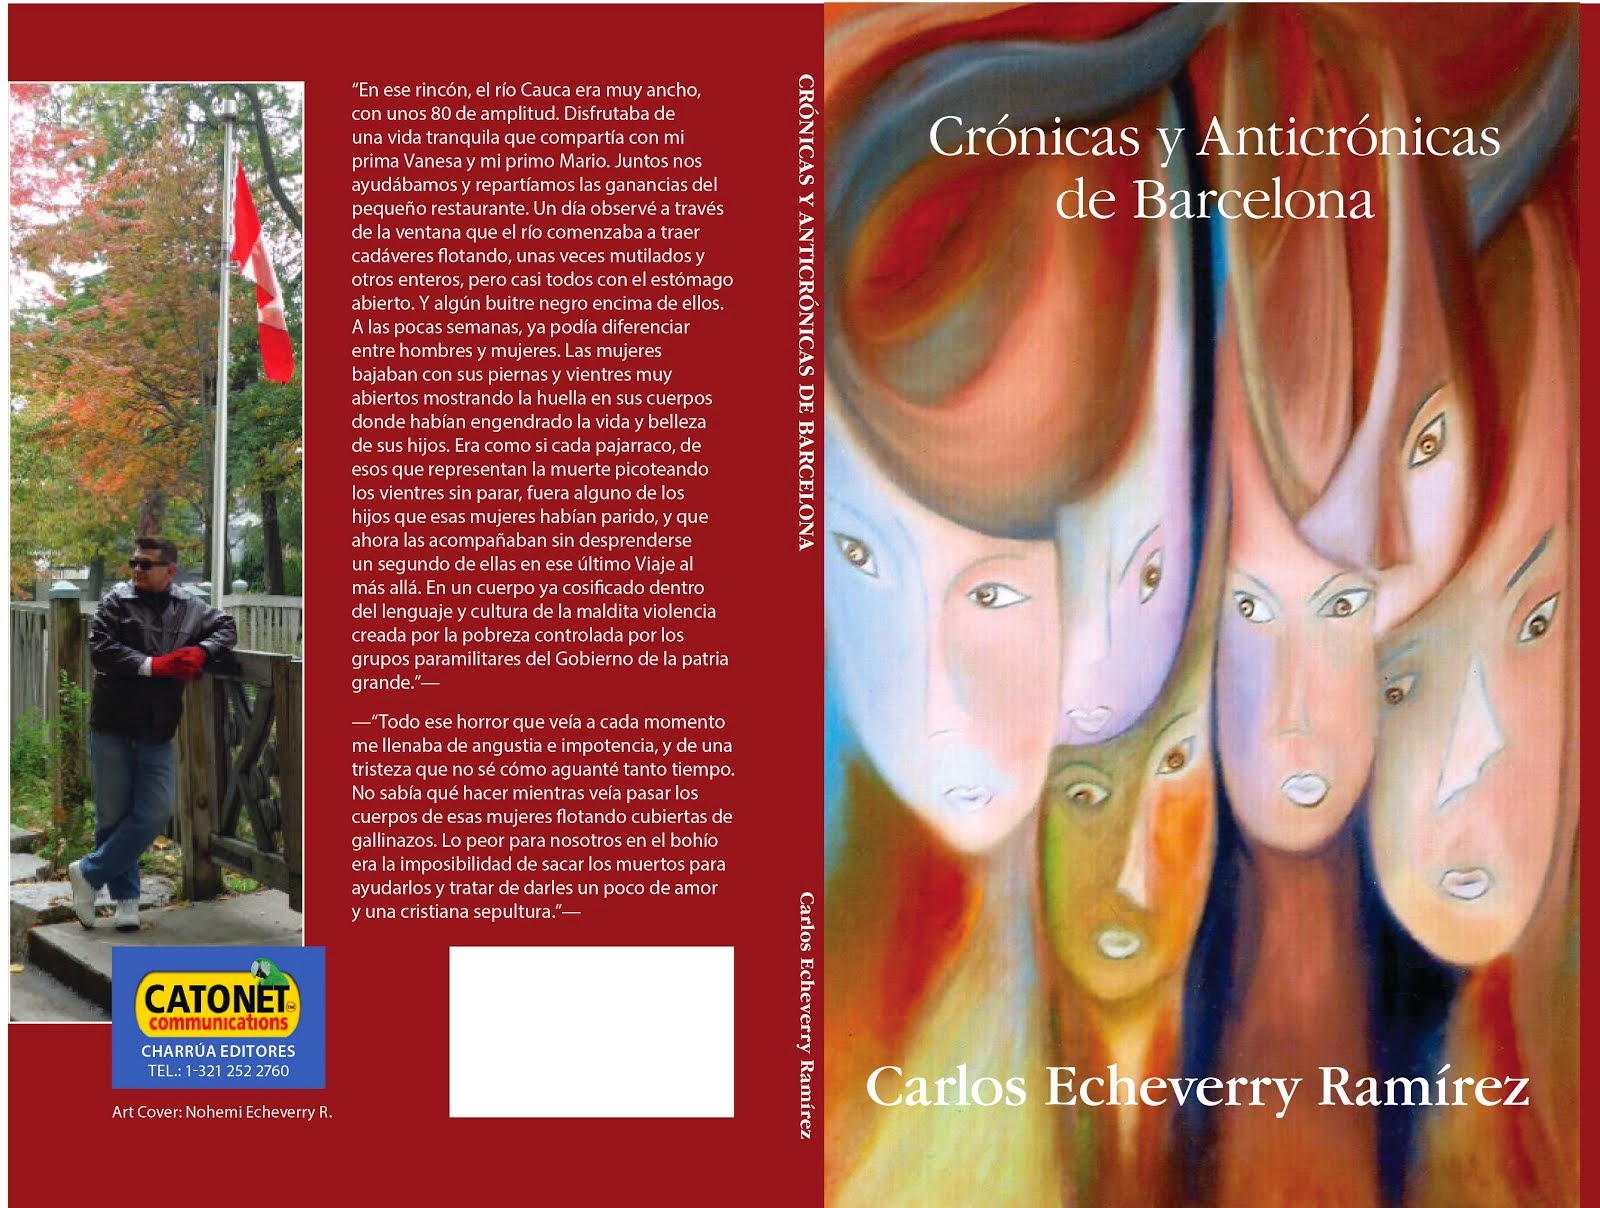 Las Crónicas y anticrónicas de Barcelona en Amazon y Kindle